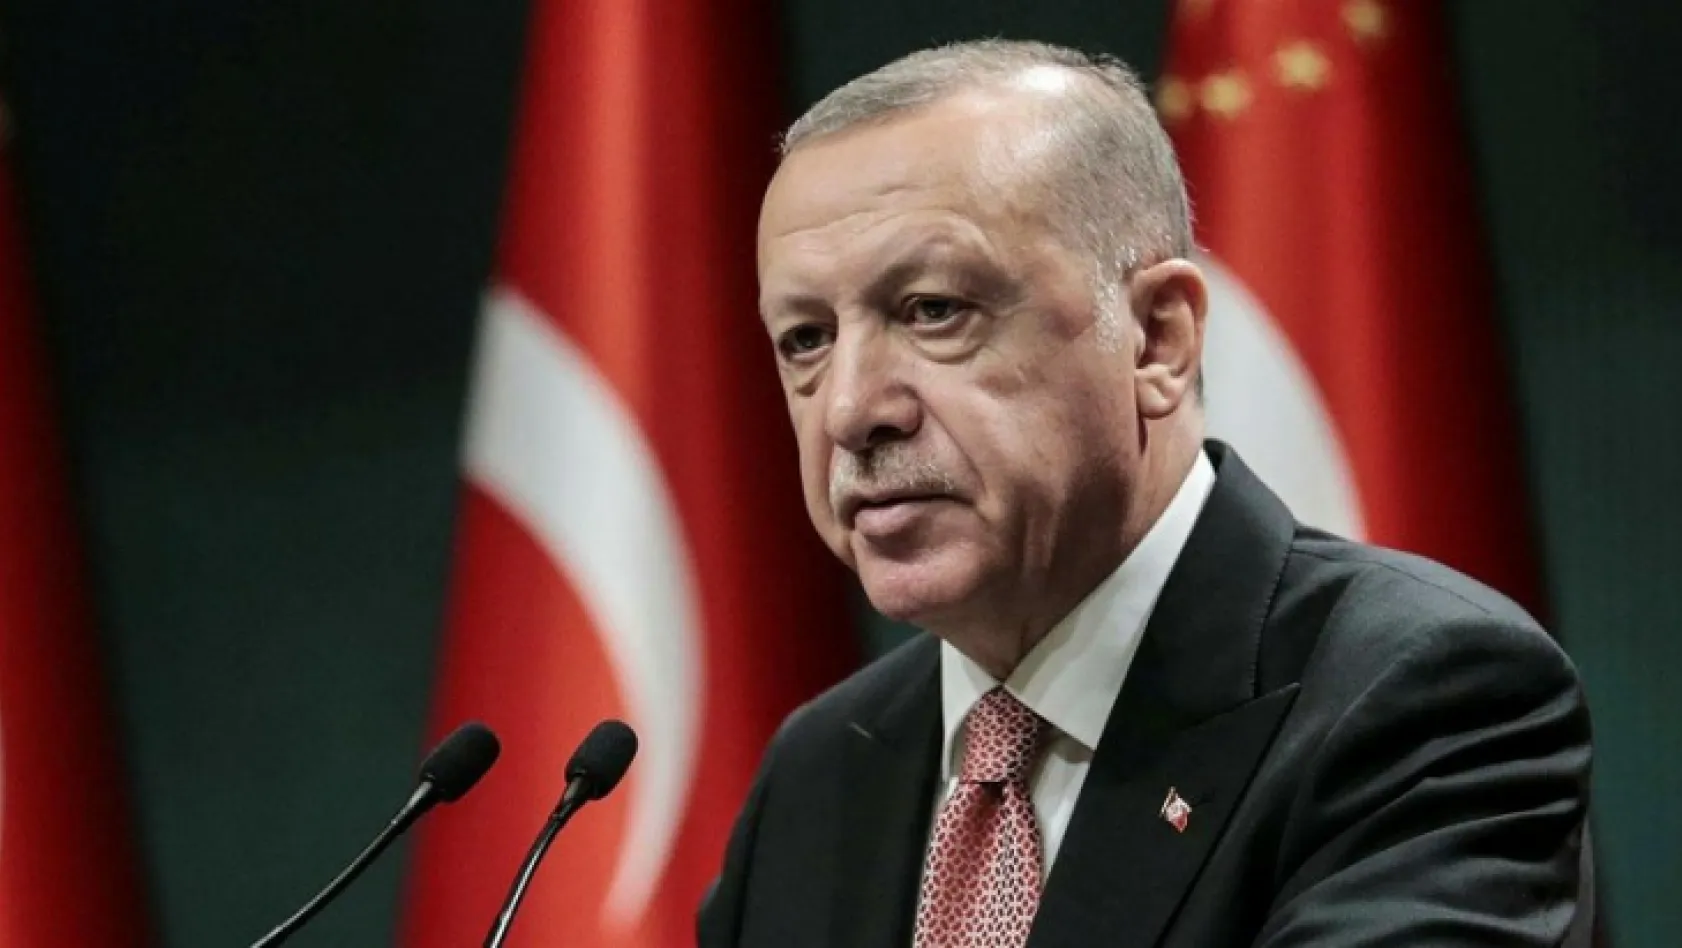 Cumhurbaşkanı Erdoğan'dan 128 milyar dolar açıklaması